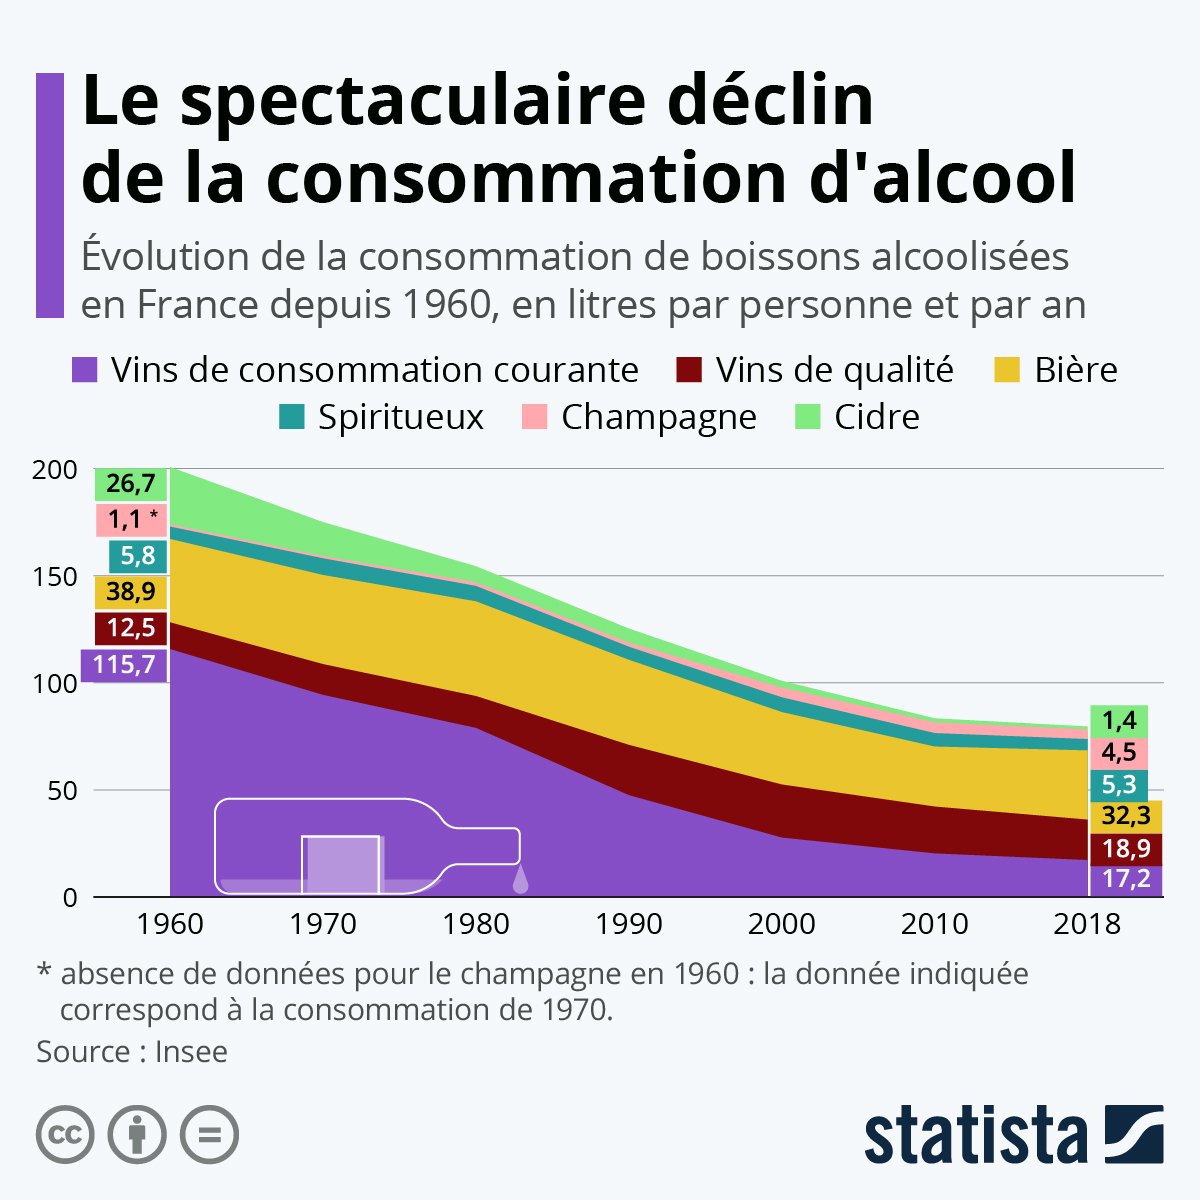 Evolution de la consommation d'alcool en France depuis 1960